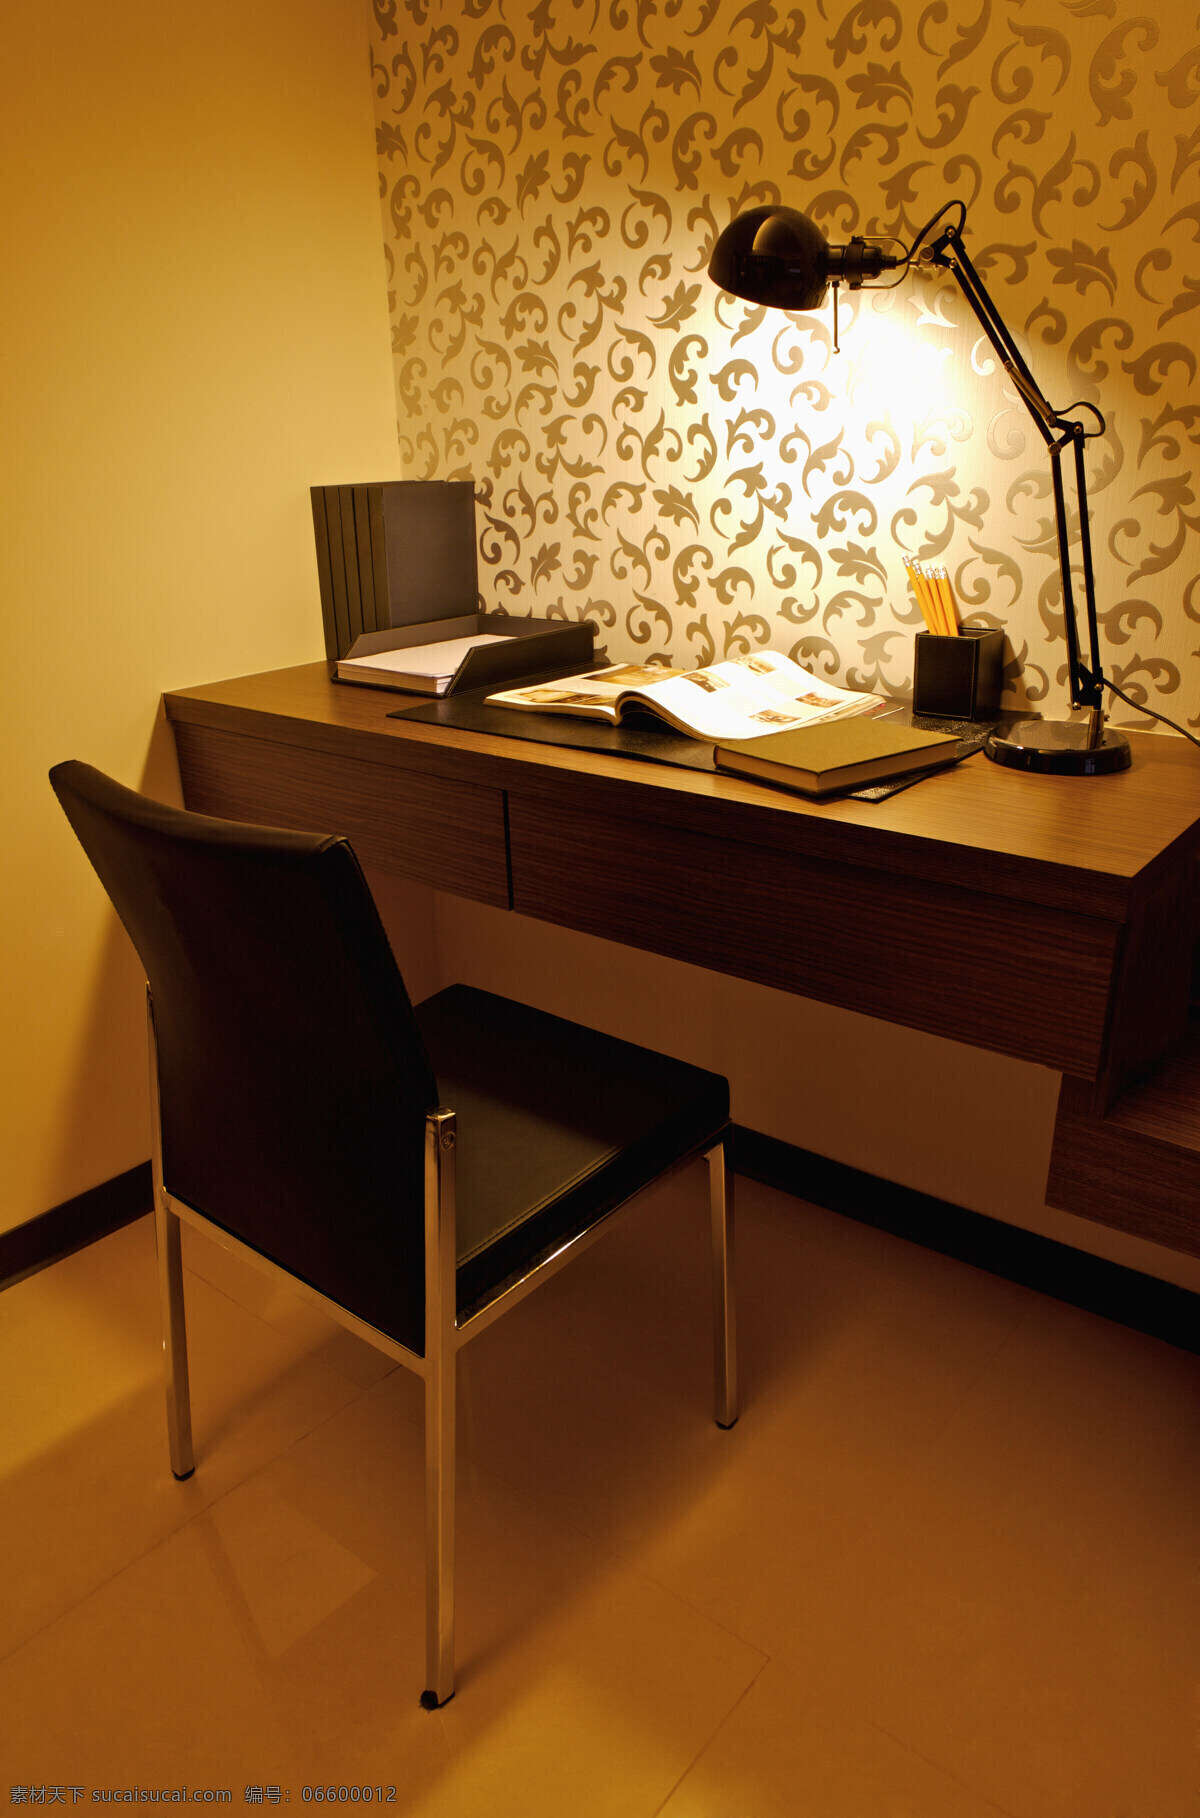 室内装潢 温馨 安静 整洁 简单 椅子 台灯 桌子 书本 花纹 地板 精致 典雅 搭配 舒服 明亮 卫生 居住环境 室内设计 环境家居